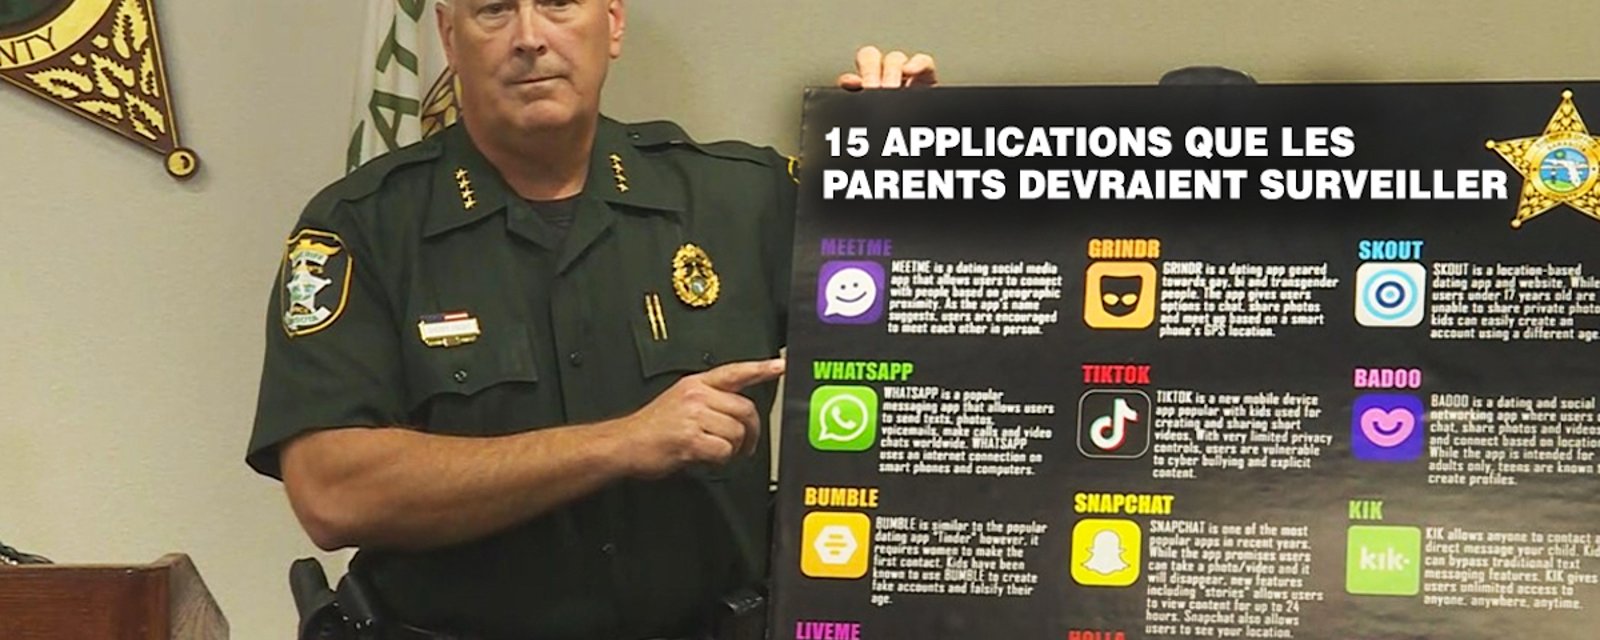 15 applications que vous devriez surveiller dans les téléphones de vos enfants, selon des policiers